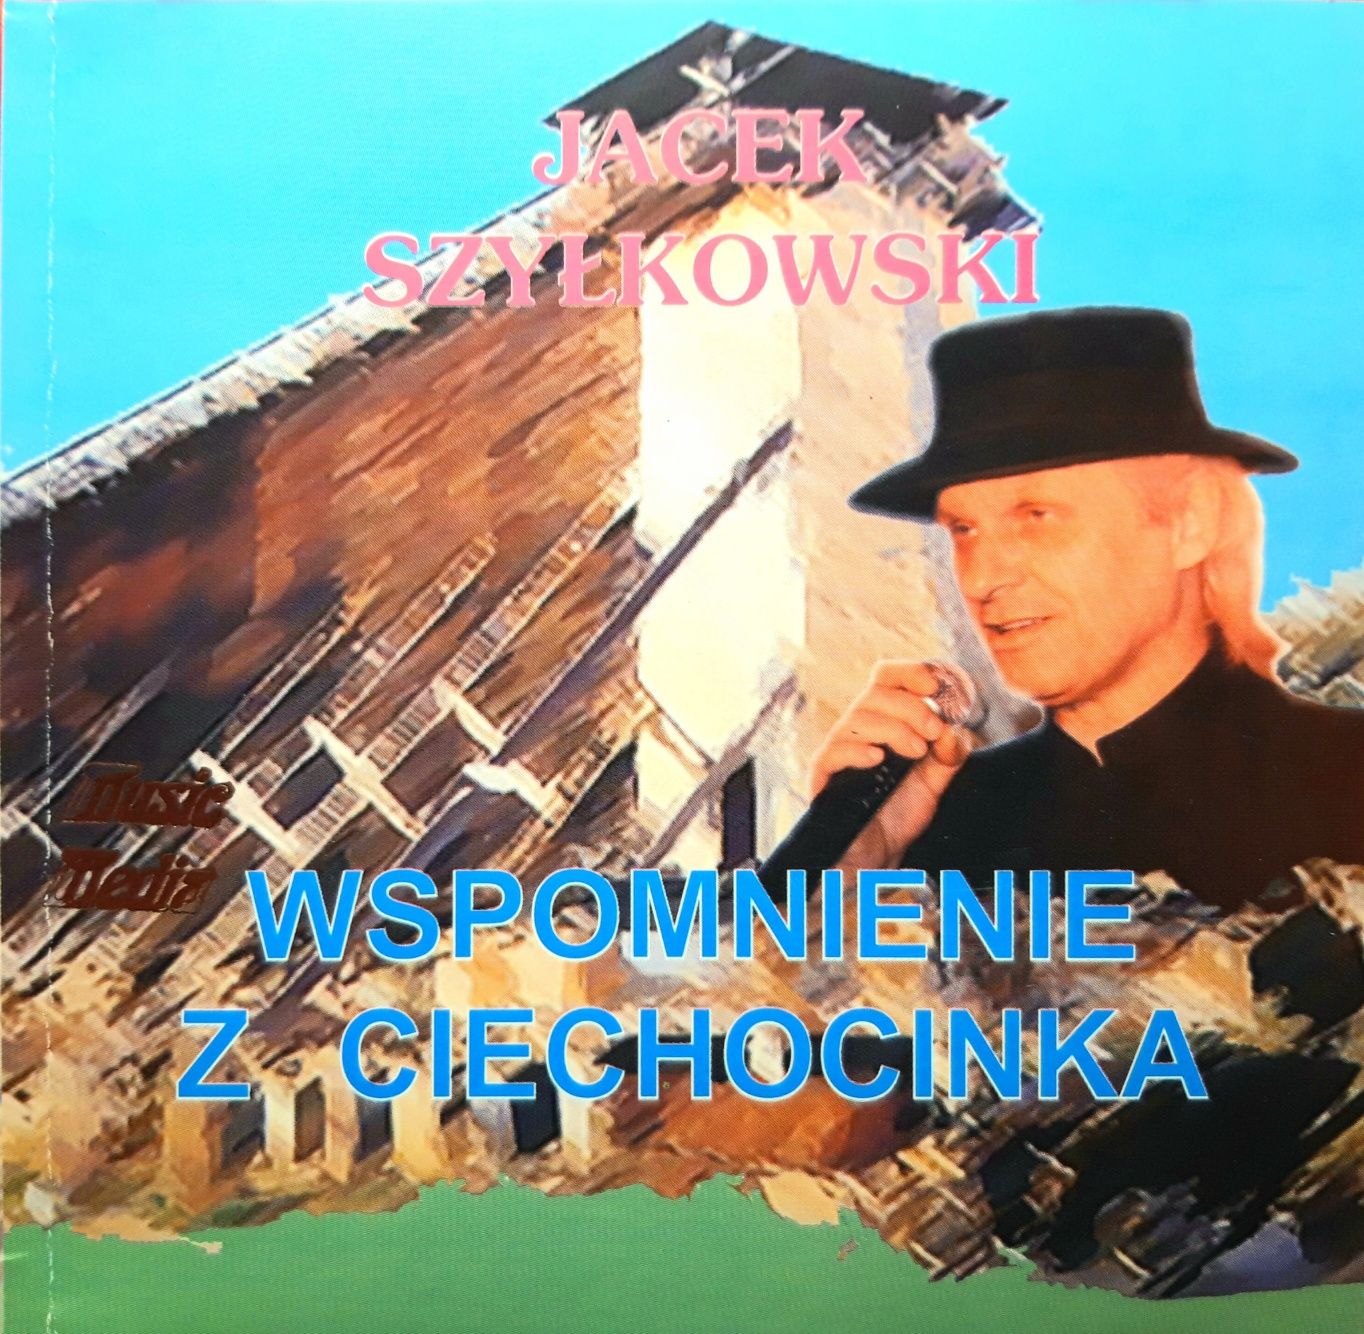 Jacek Szyłkowski – Wspomnienie Z Ciechocinka (CD, 2010?)